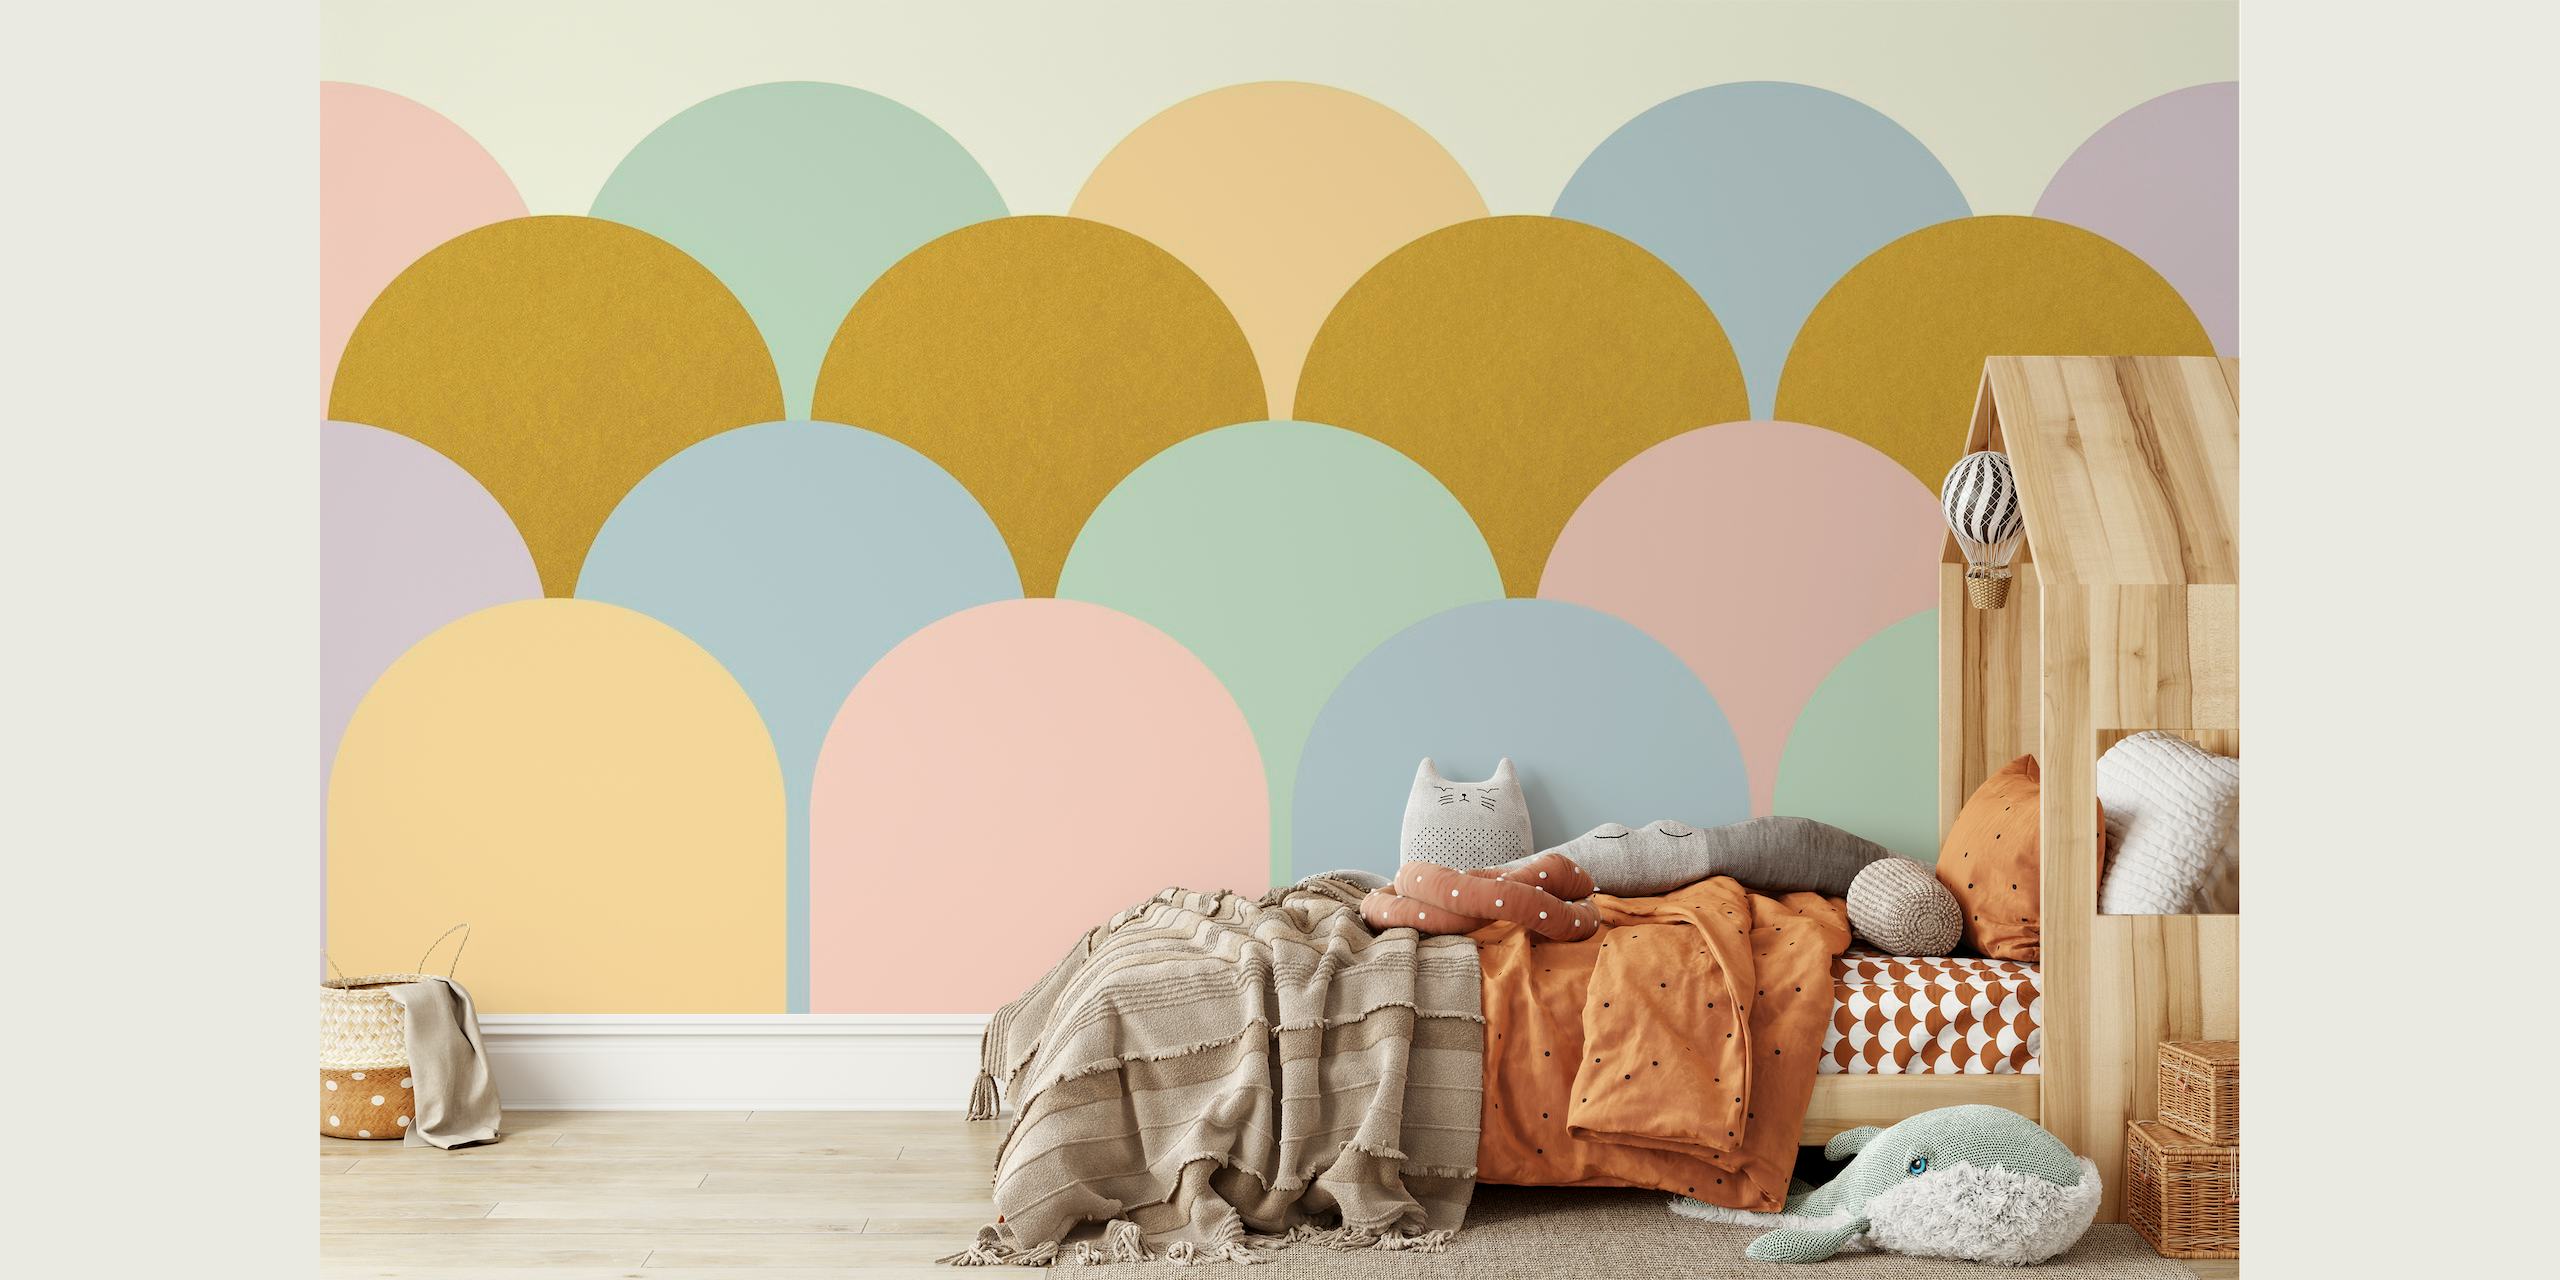 Arcos boho coloridos em tons pastéis em um mural de parede